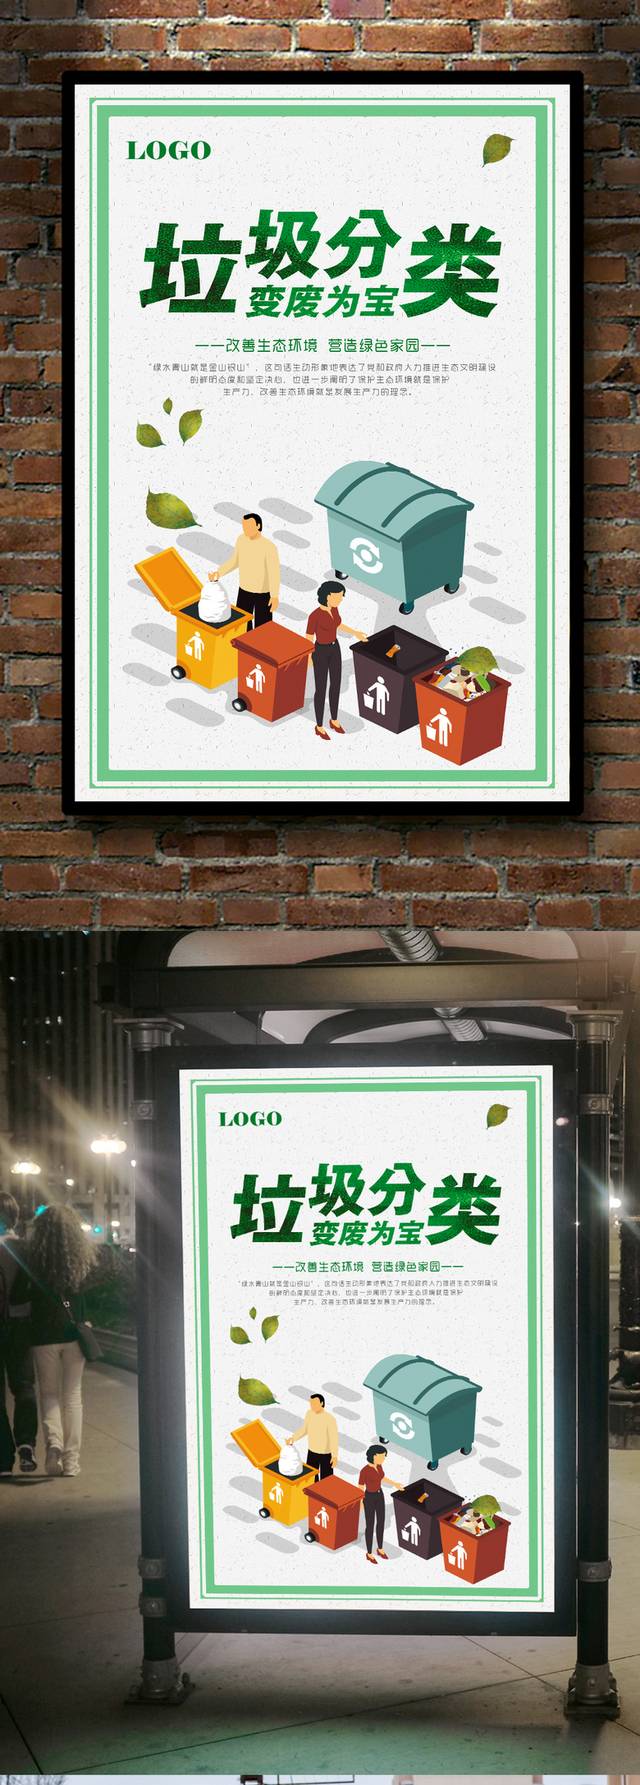 垃圾分类环保宣传海报